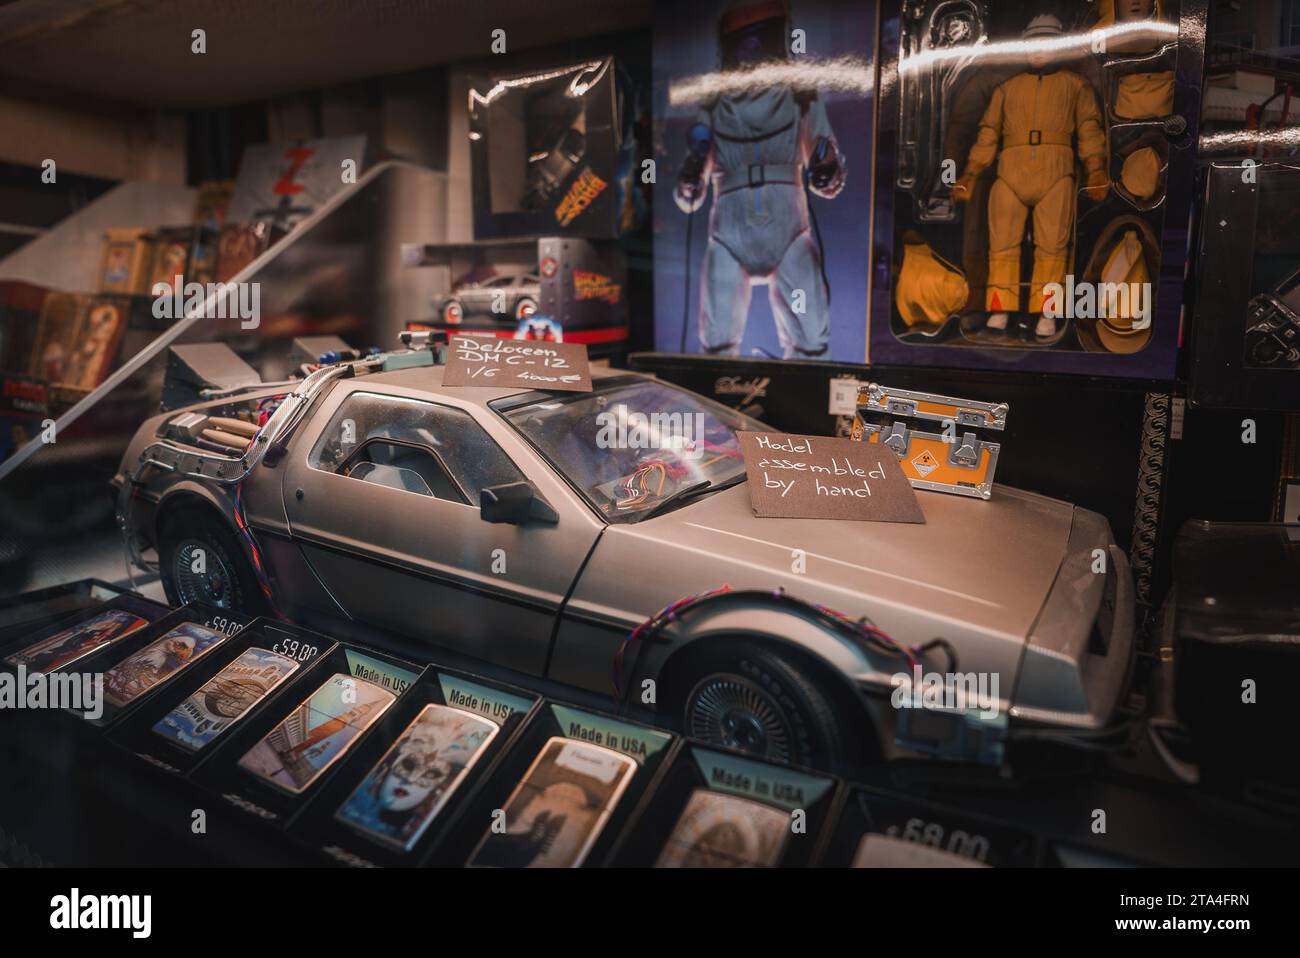 Back to the Future Delorean Car and Memorabilia Display in Nostalgic Exhibition Setting Stock Photo